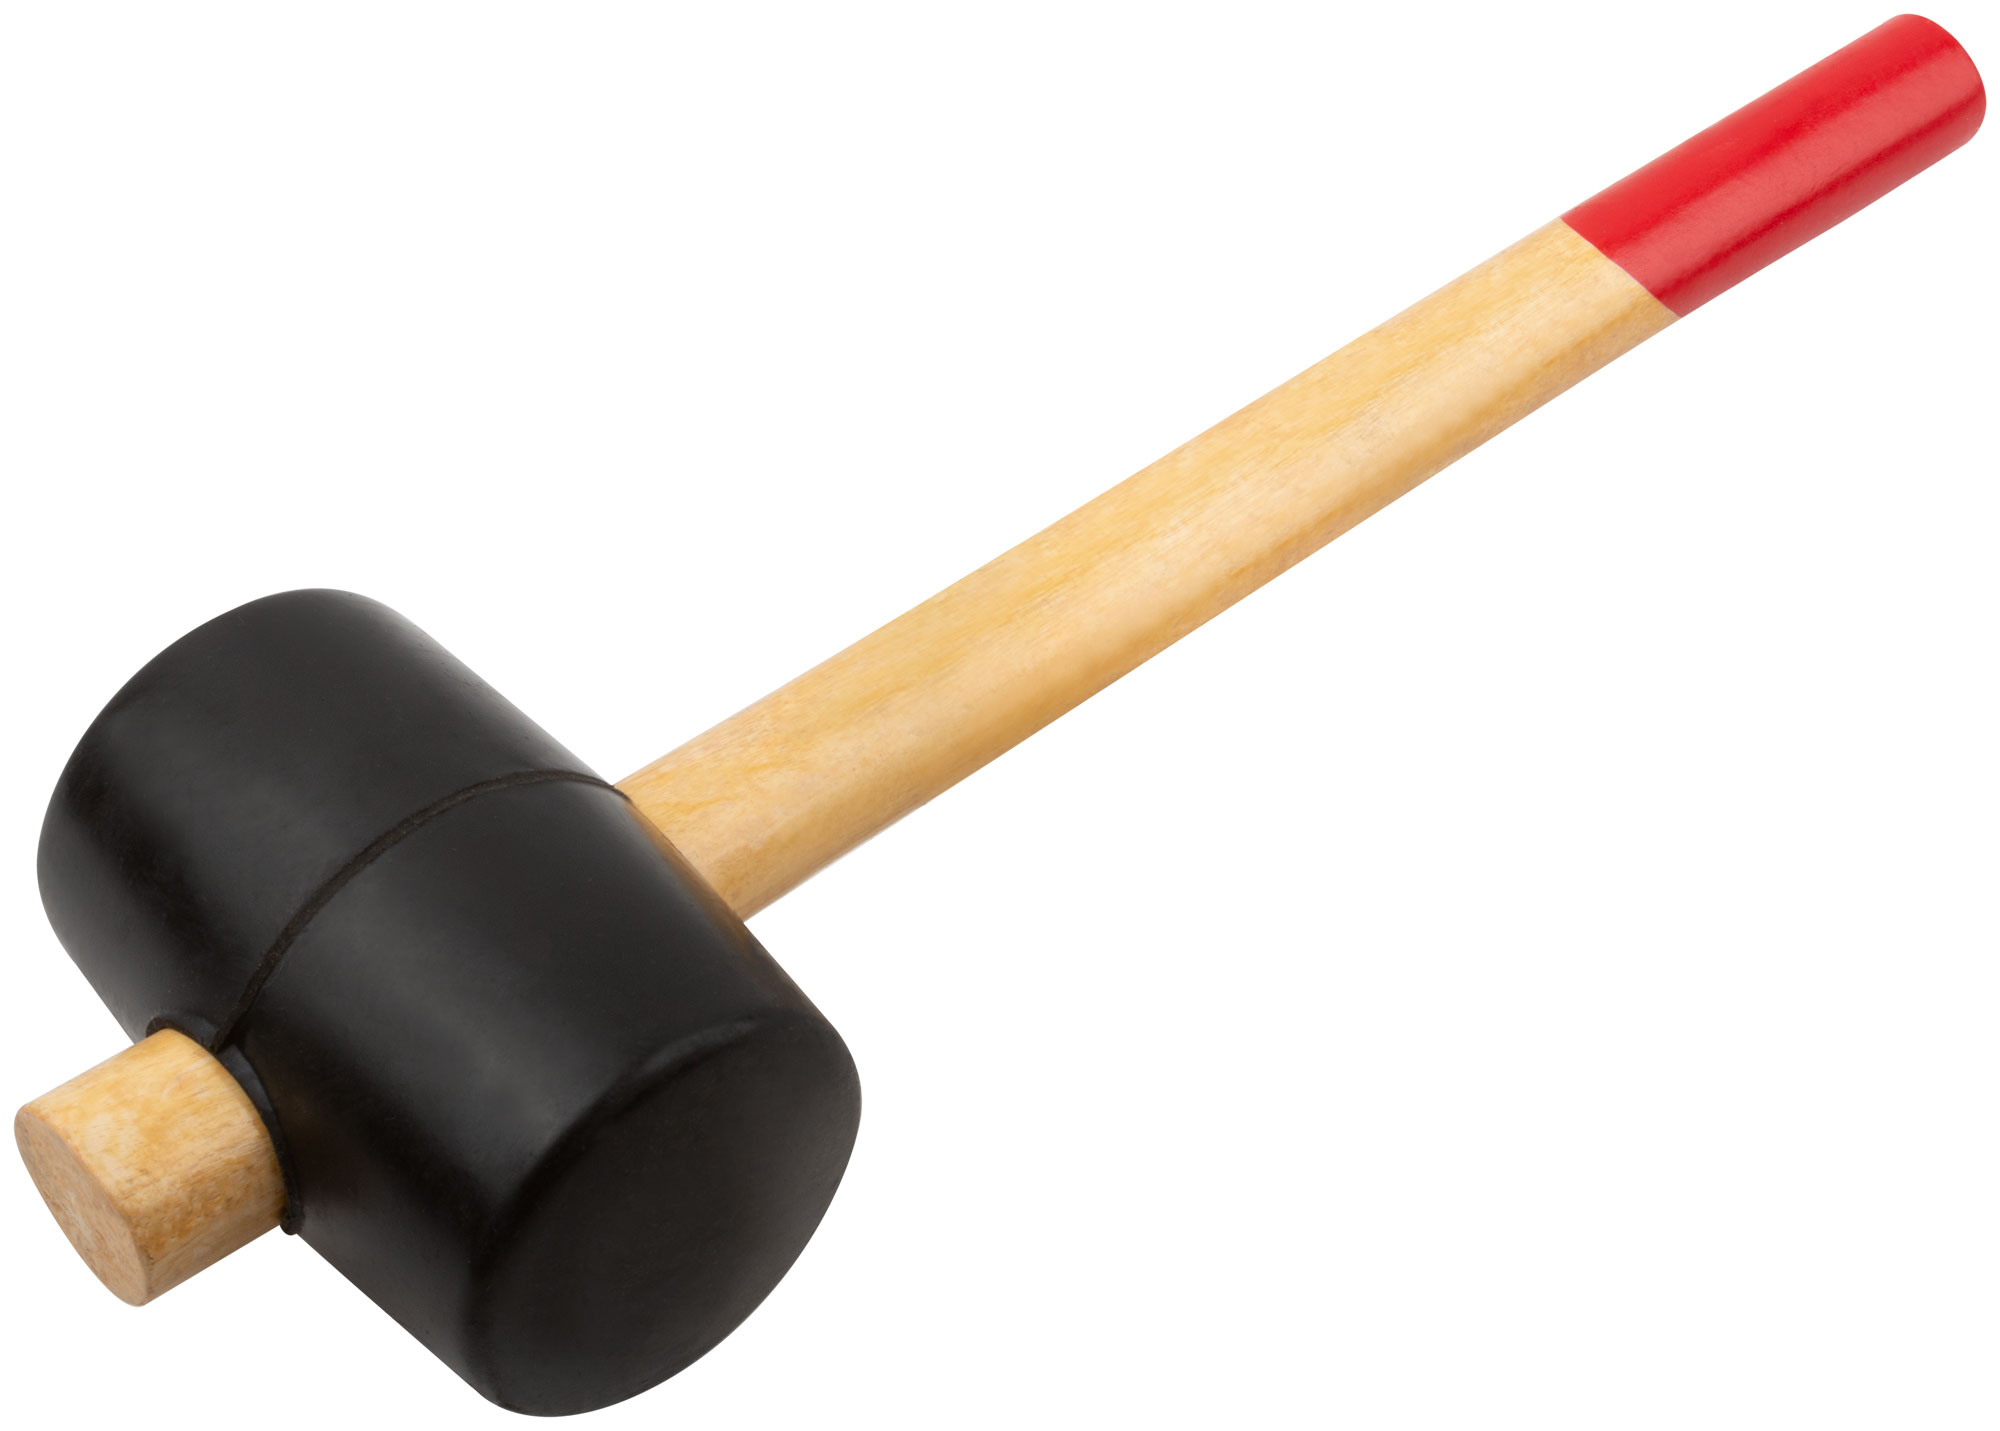 Киянка резиновая, 70 мм ( 750 гр ) КУРС 45375 киянка курс оптима 45375 резиновая деревянная ручка 70 мм